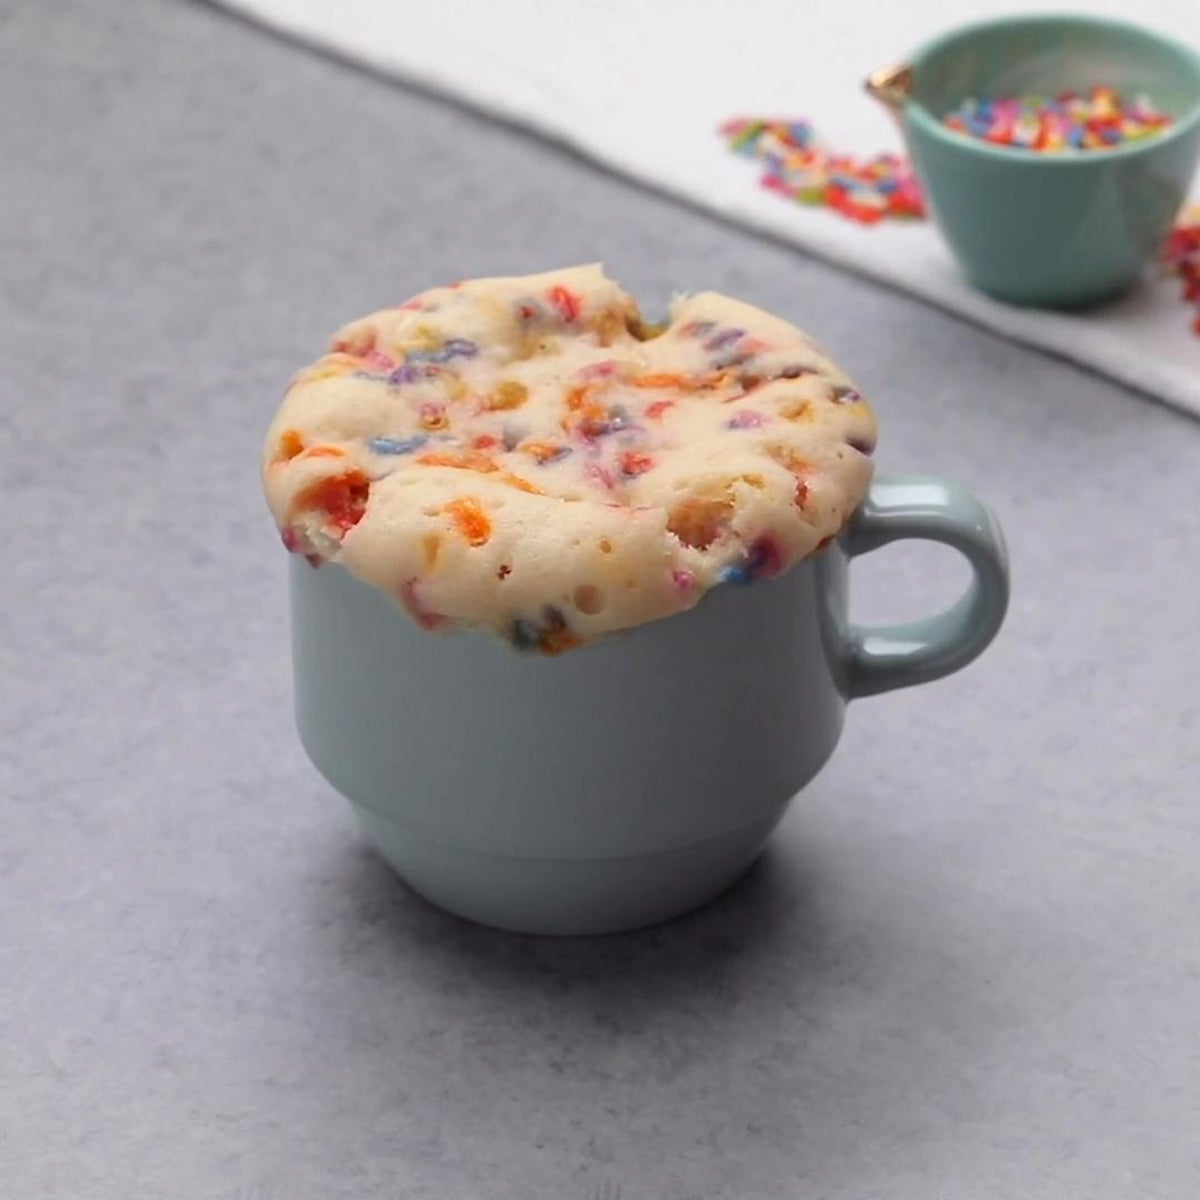 Mermaid Confetti Mug Cake - Finding Zest